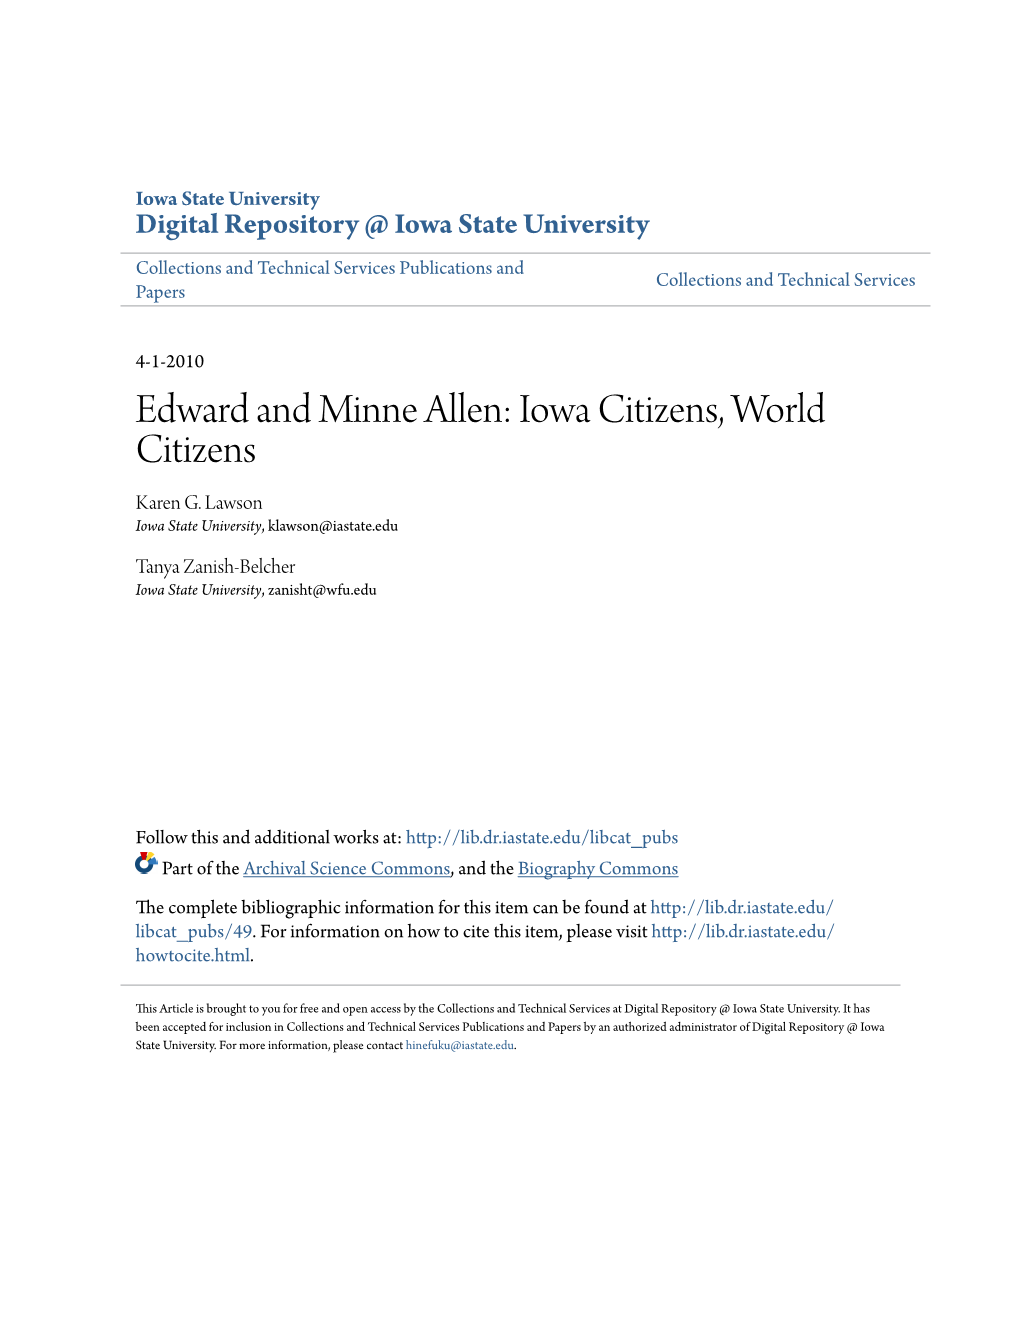 Edward and Minne Allen: Iowa Citizens, World Citizens Karen G